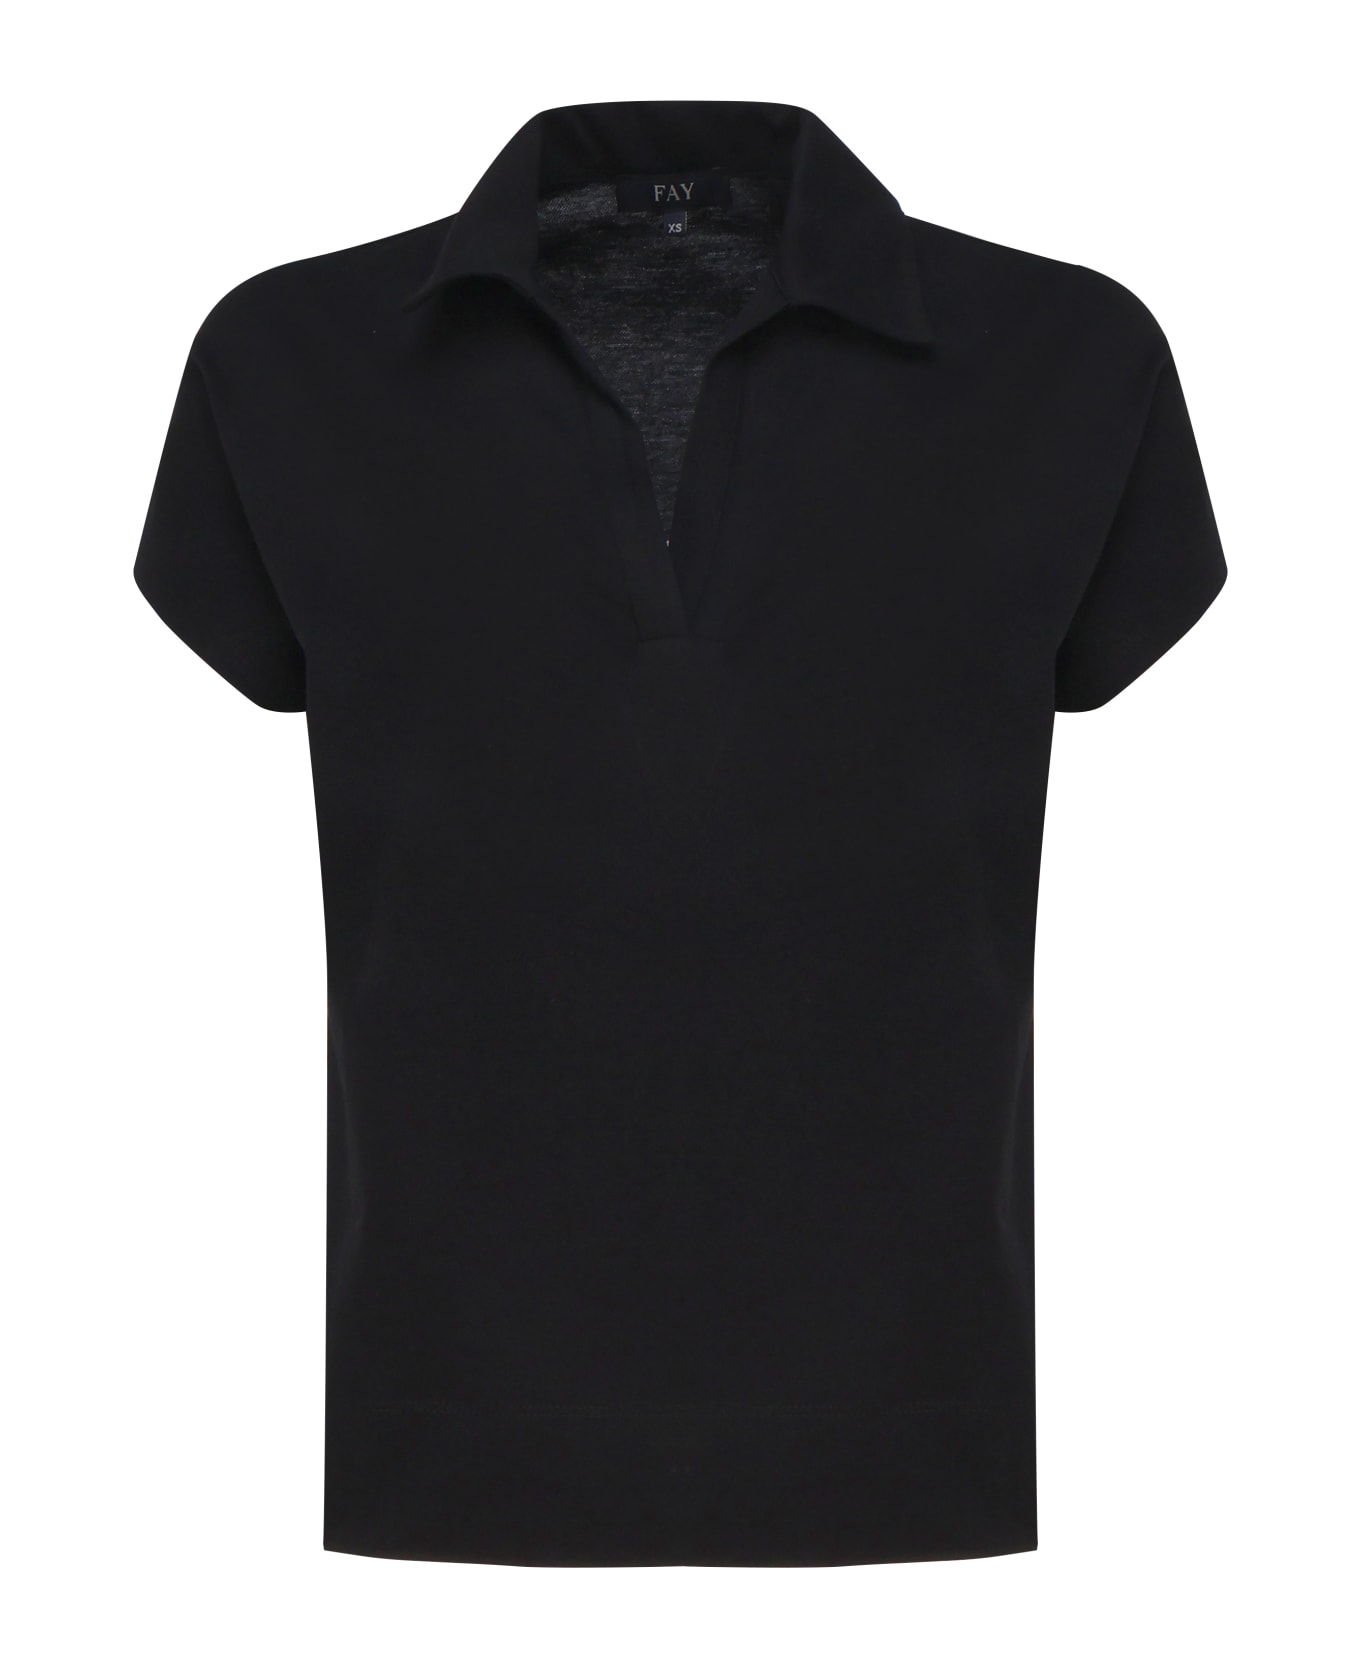 Fay Short Sleeve Polo Shirt - Black